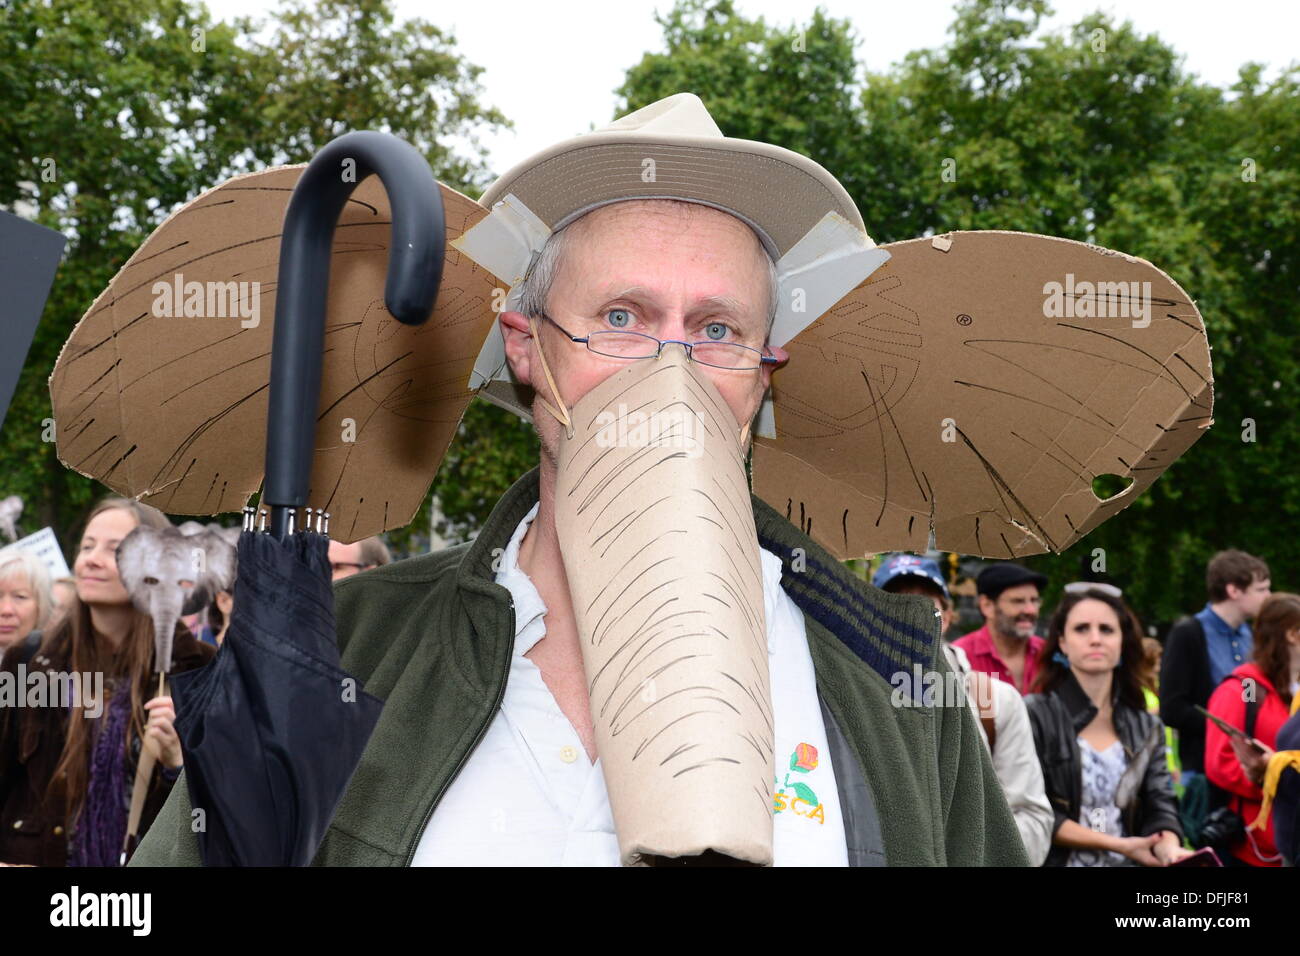 Londra REGNO UNITO, 4 Ott 2013 : Protester indossando un elefante maschera all'esterno la piazza del Parlamento a Londra. Vedere Li / Alamy Live News Foto Stock